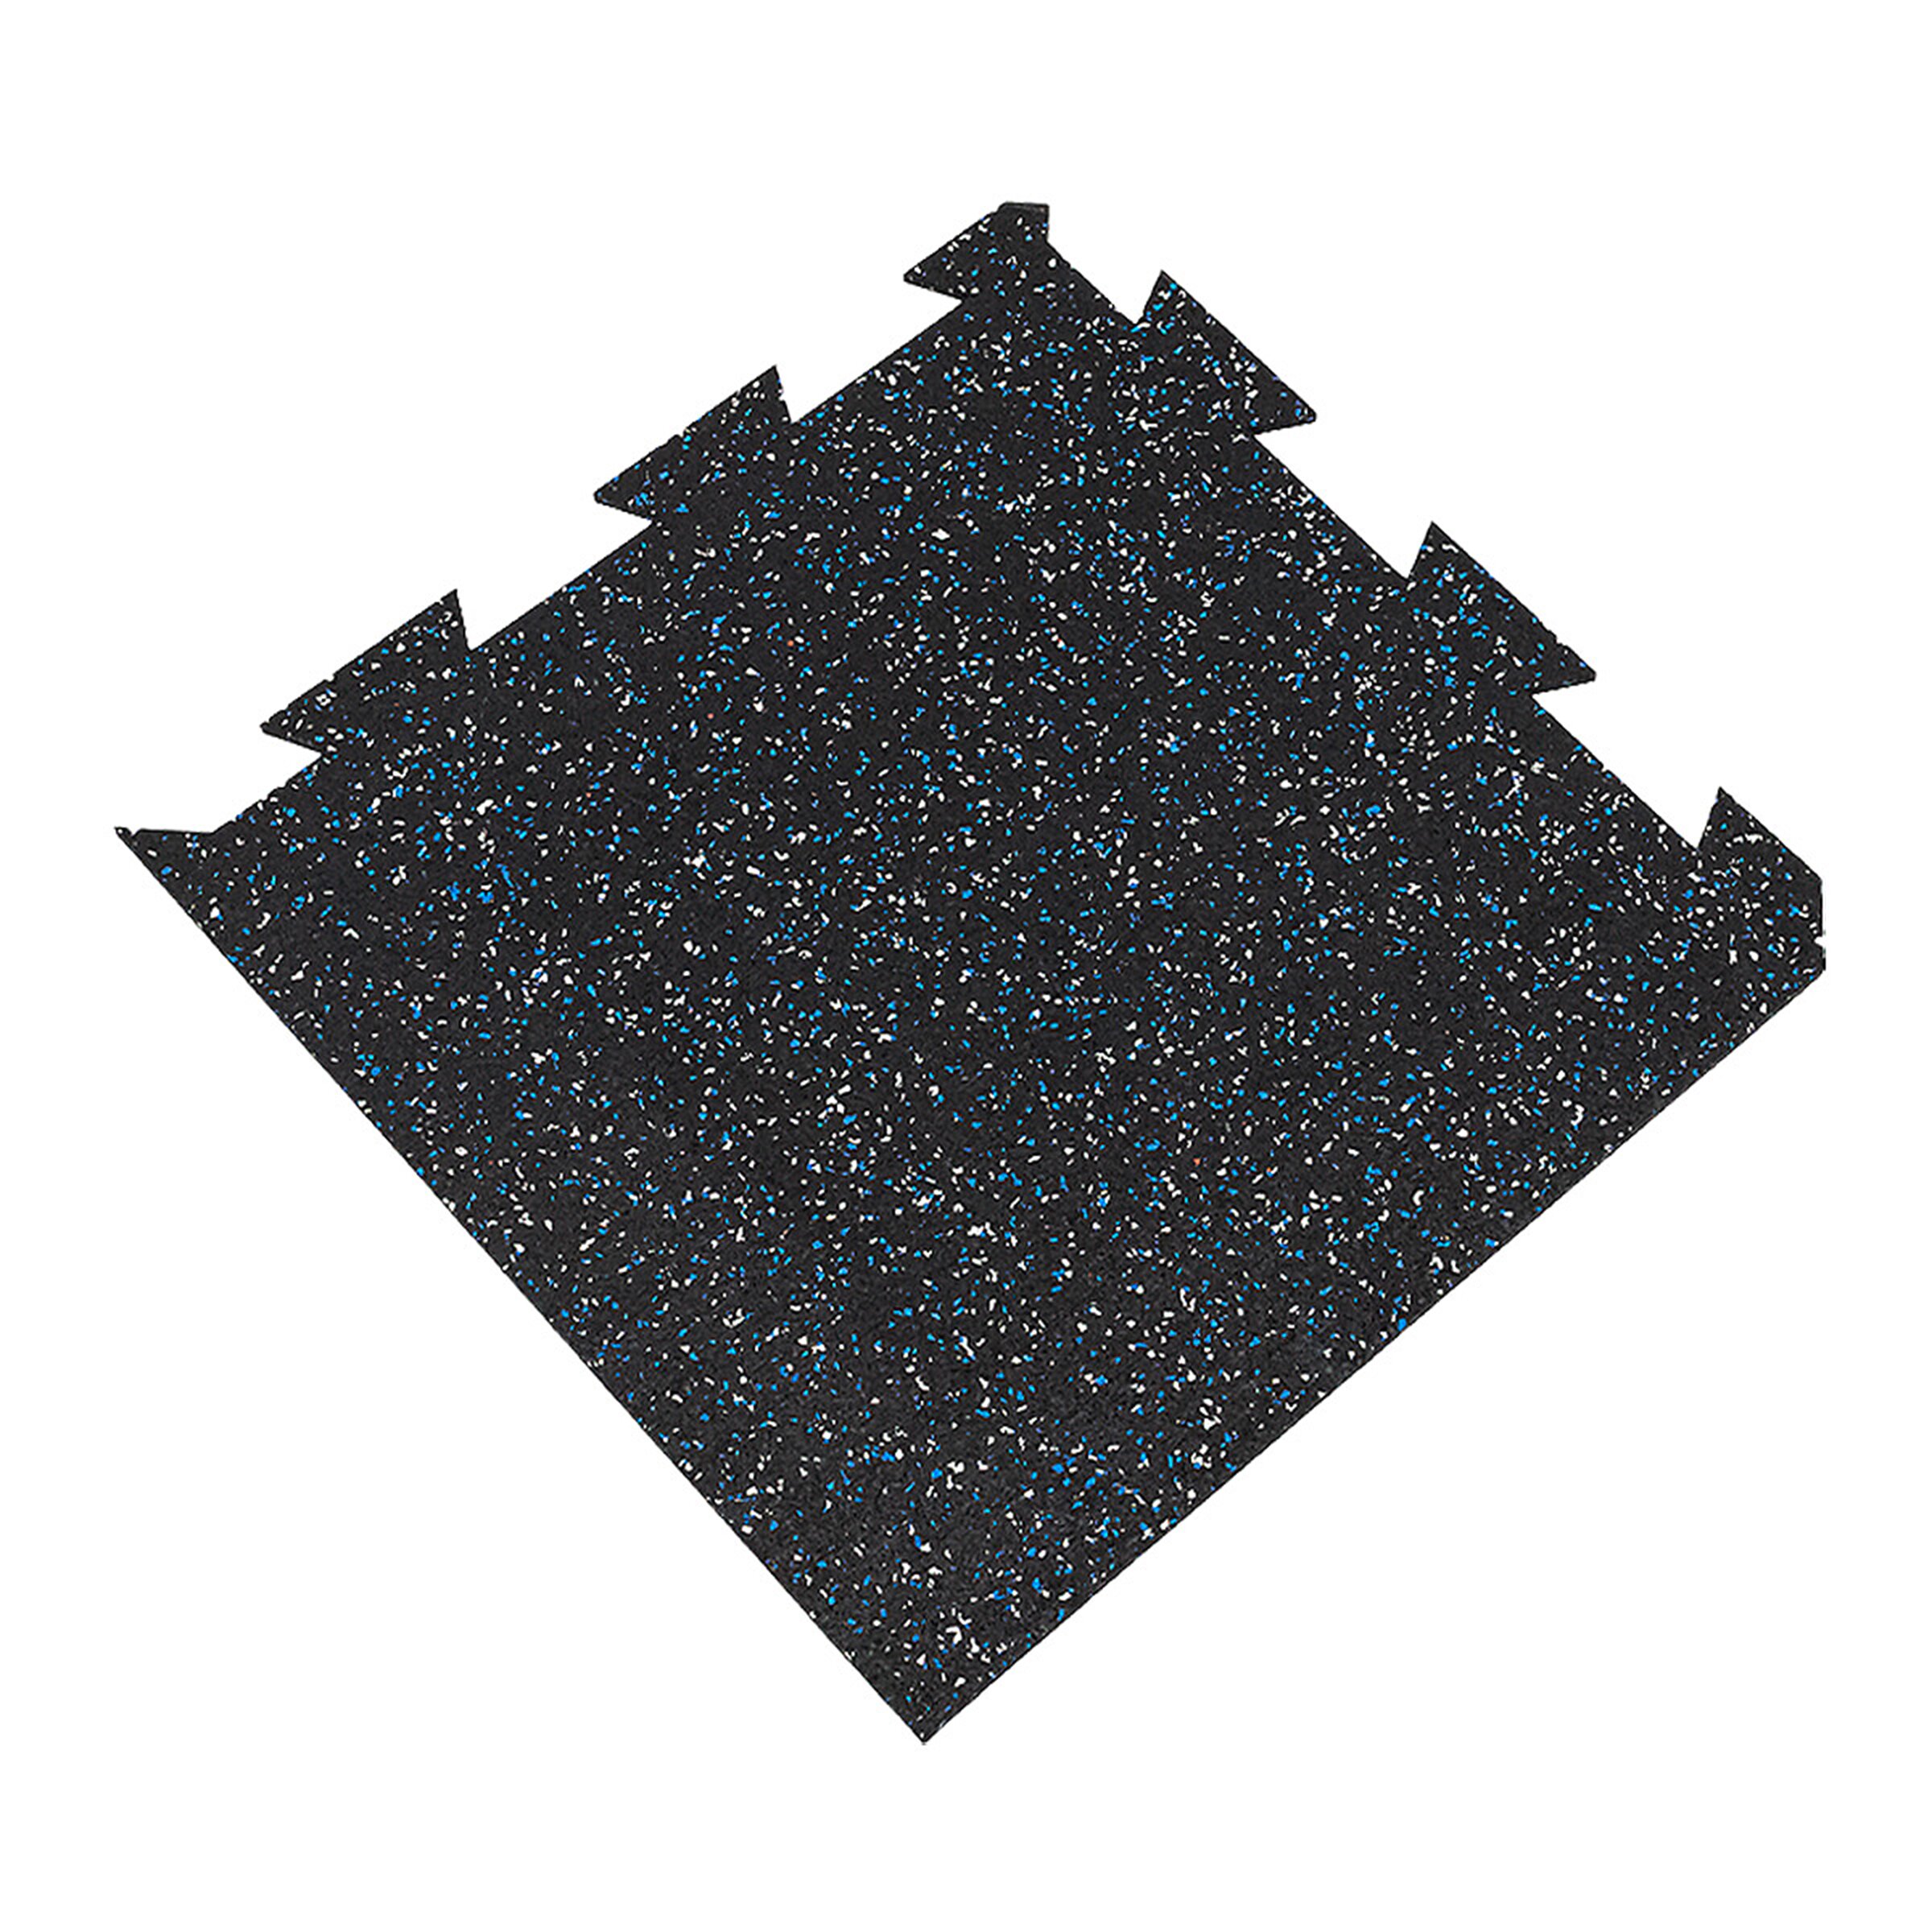 Černo-bílo-modrá gumová puzzle modulová dlažba FLOMA SF1050 FitFlo - délka 50 cm, šířka 50 cm, výška 1 cm